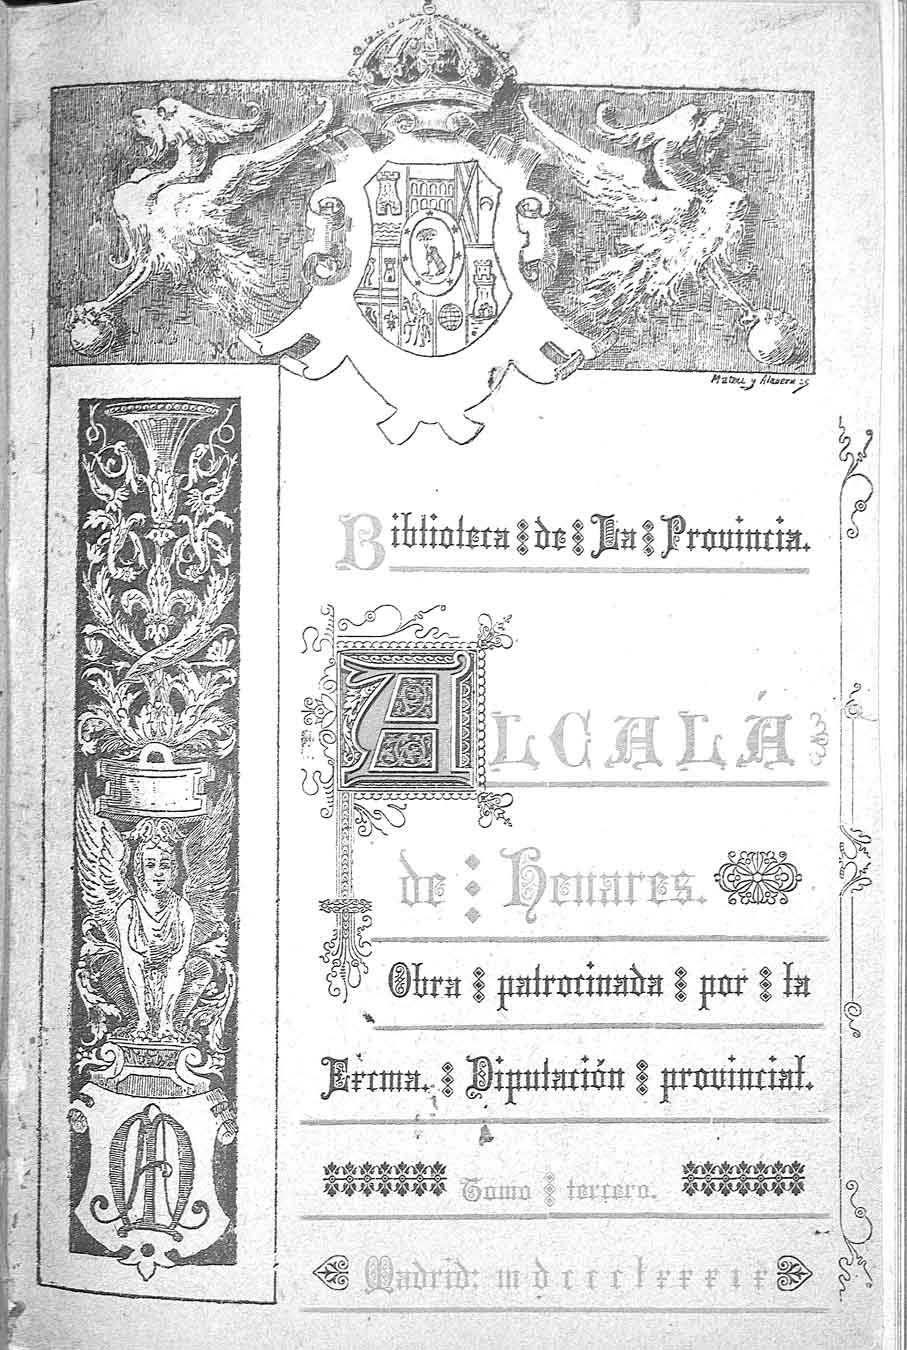 Alcalá de Henares, por Manuel Ayala y Francisco Sastre